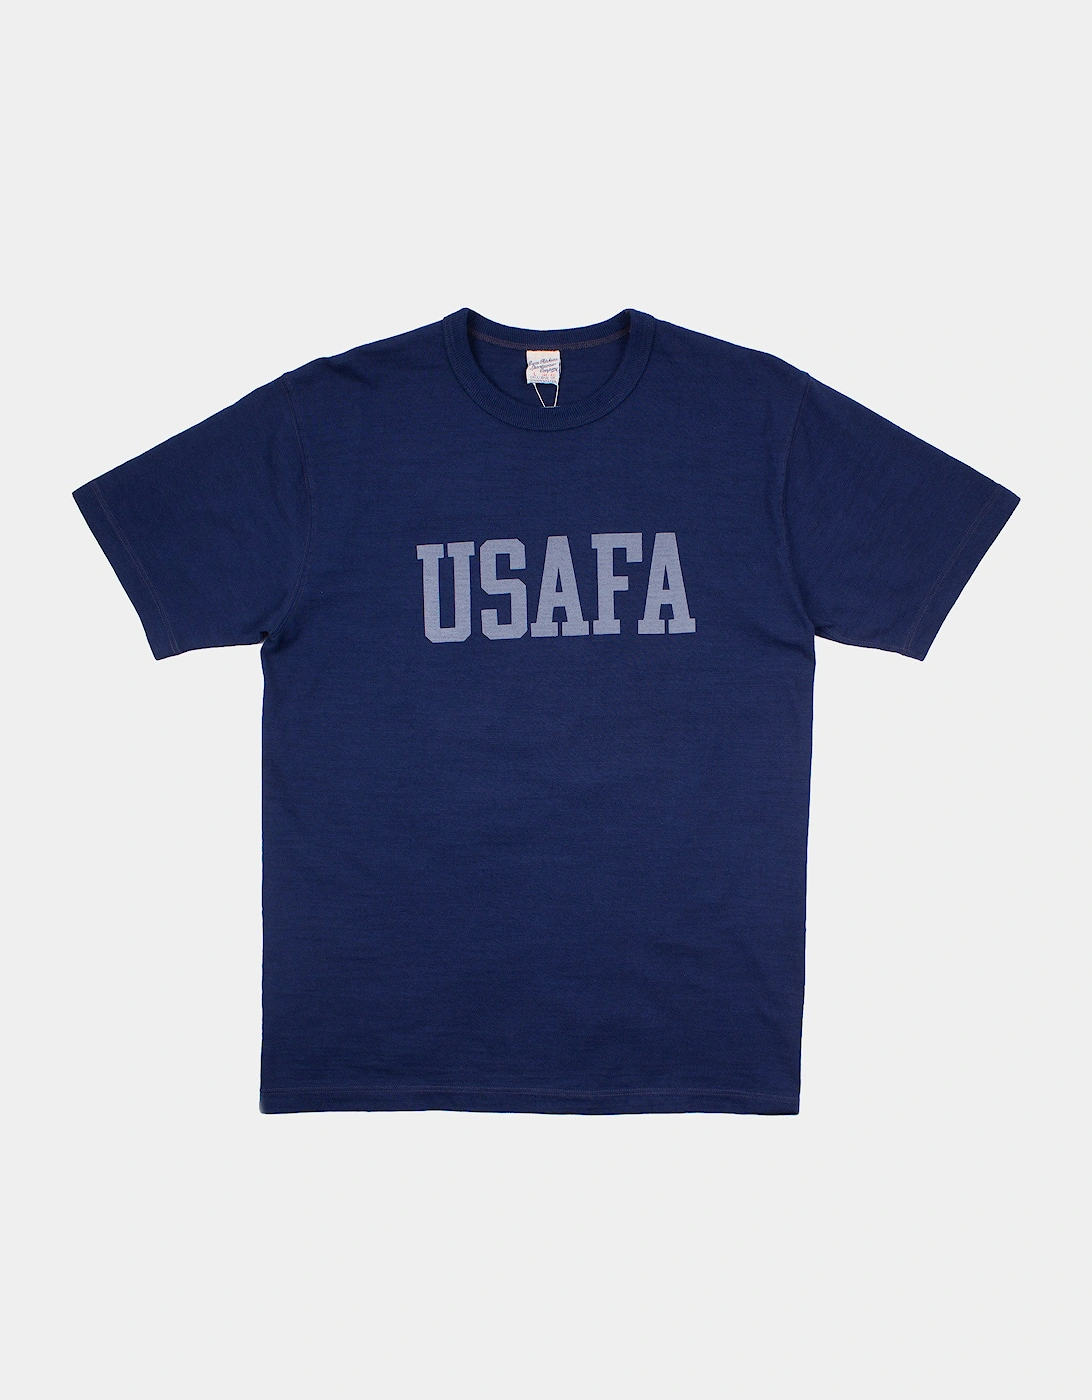 US AF Academy T-Shirt - Navy, 5 of 4